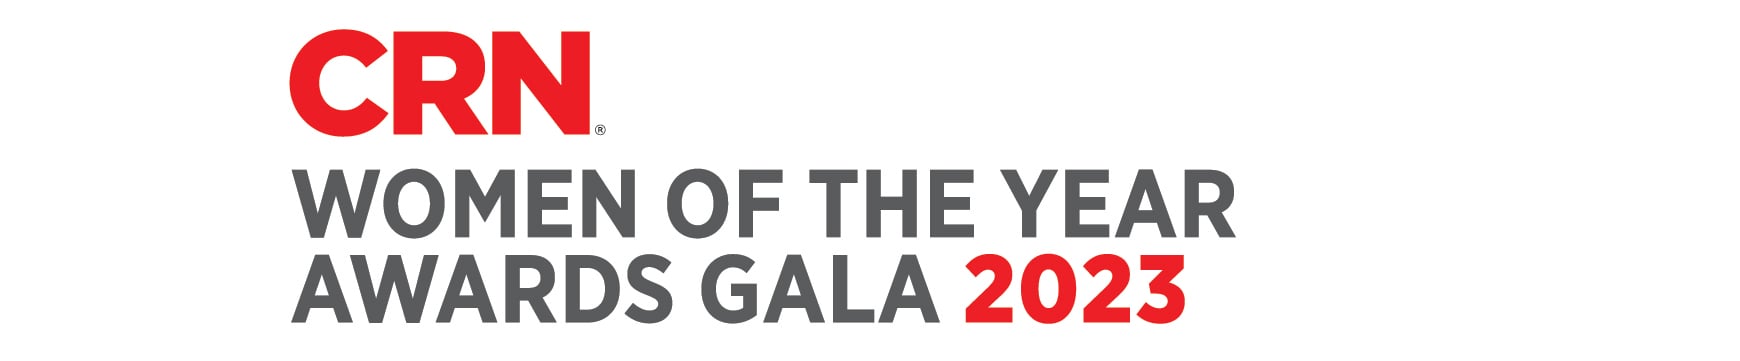 CRN_WOTC_AwardsGala_Logo